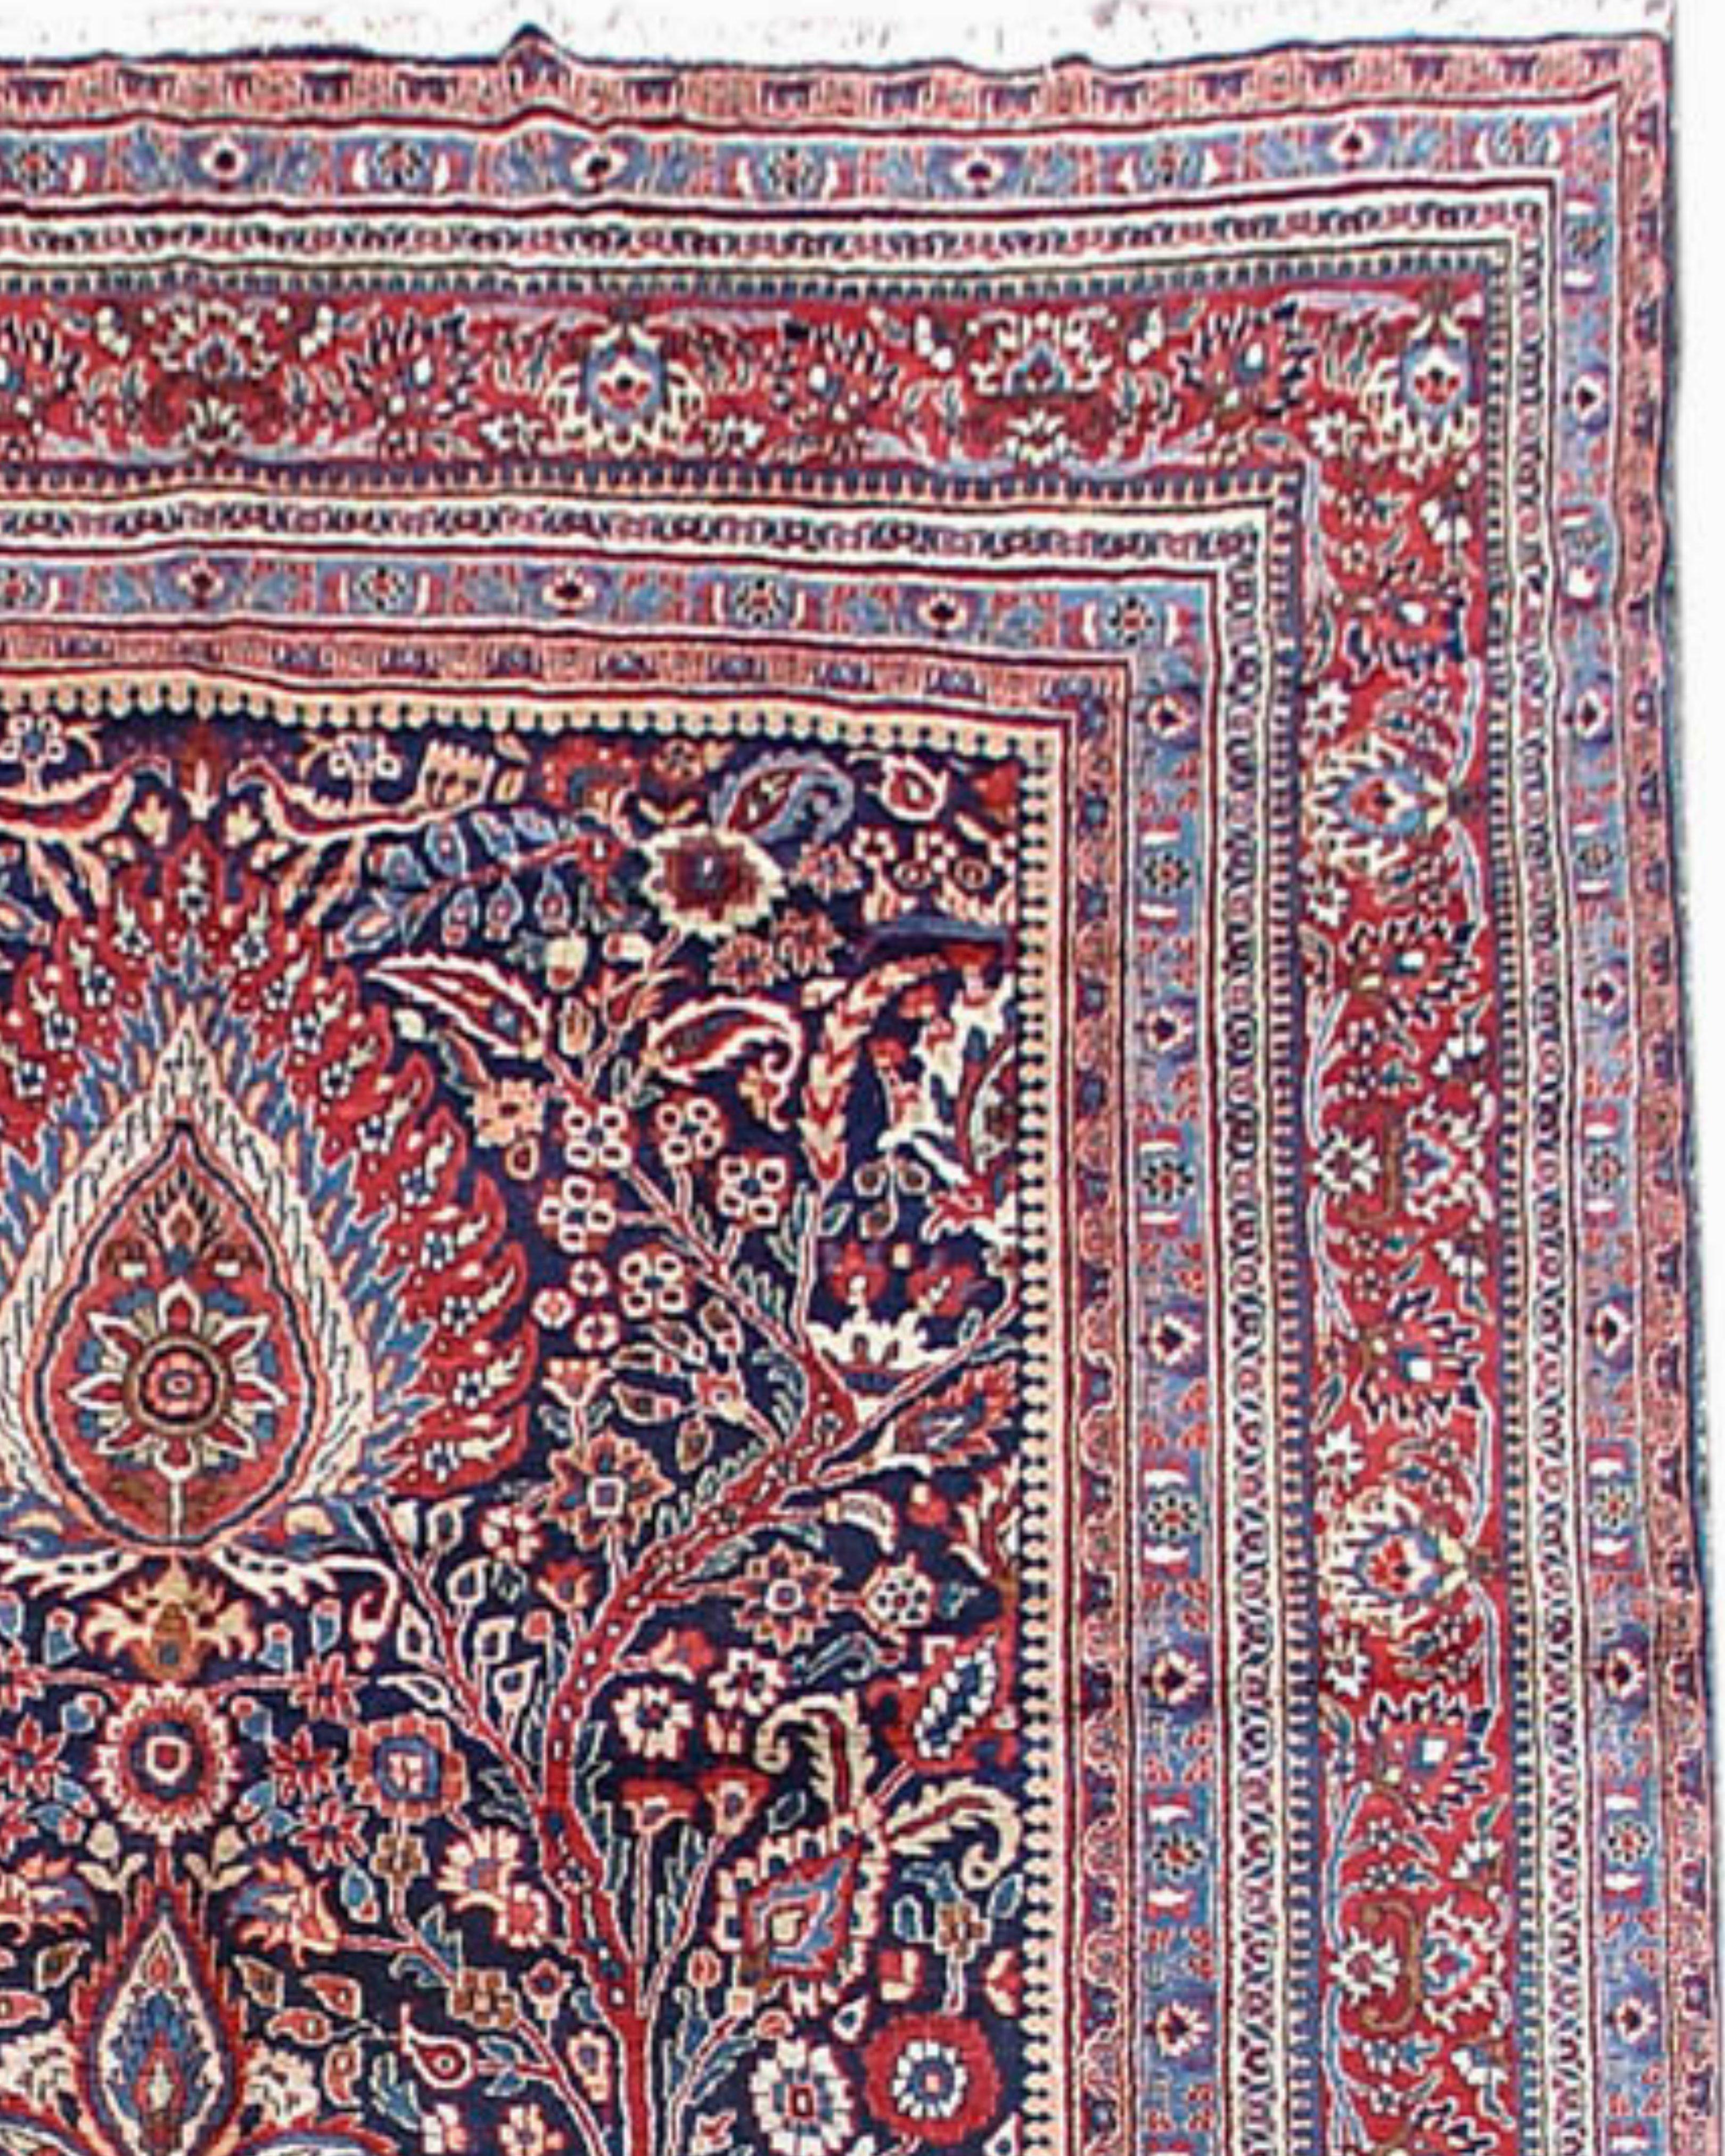 Antiker persischer Mashad-Teppich, Mitte des 20. Jahrhunderts

Zusätzliche Informationen:
Abmessungen: 9'3